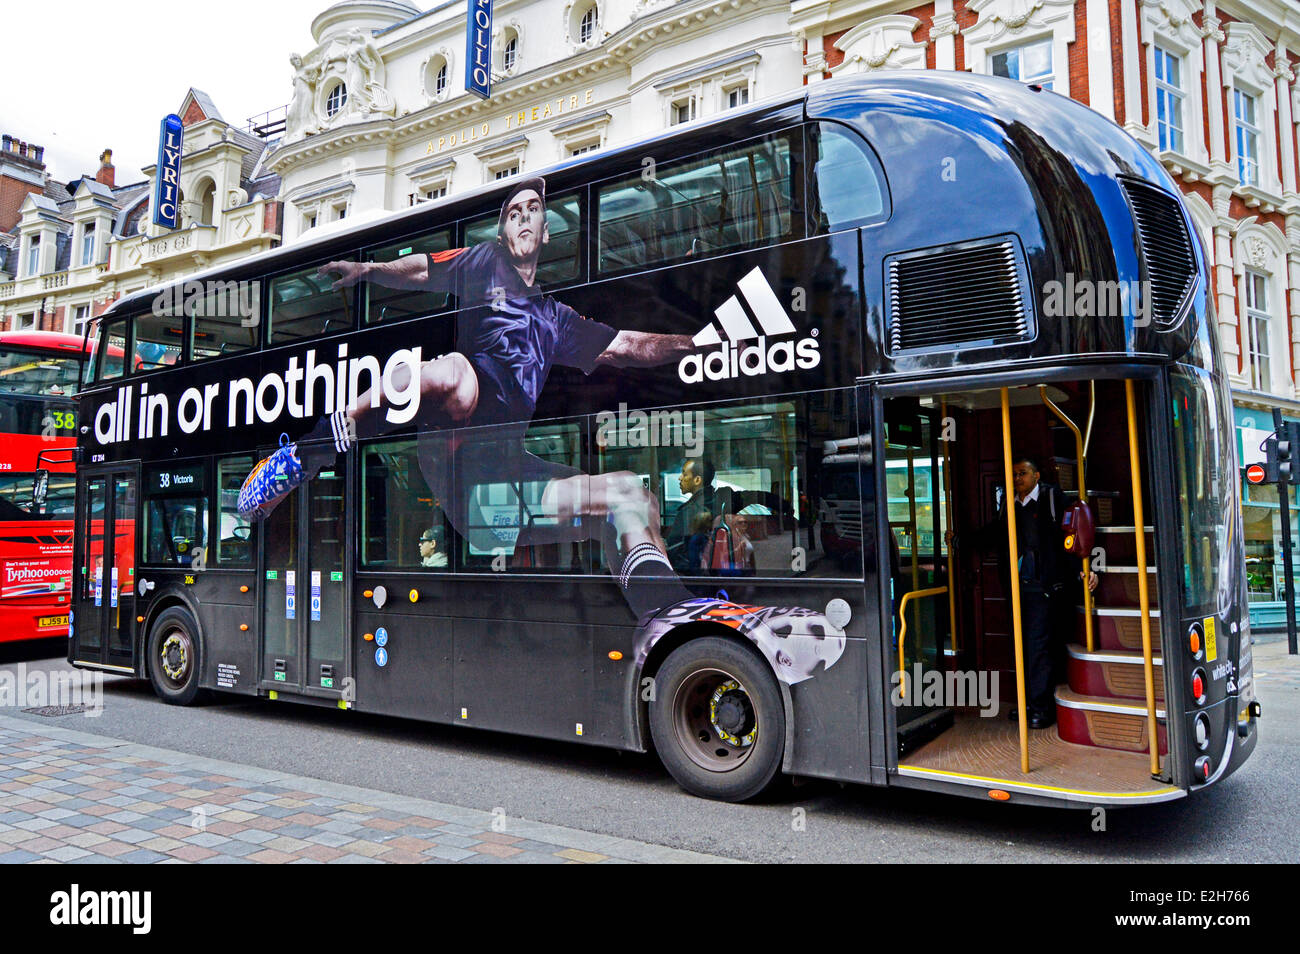 Adidas Werbung auf die neue Routemaster Bus im Zentrum von London, England,  Vereinigtes Königreich Stockfotografie - Alamy